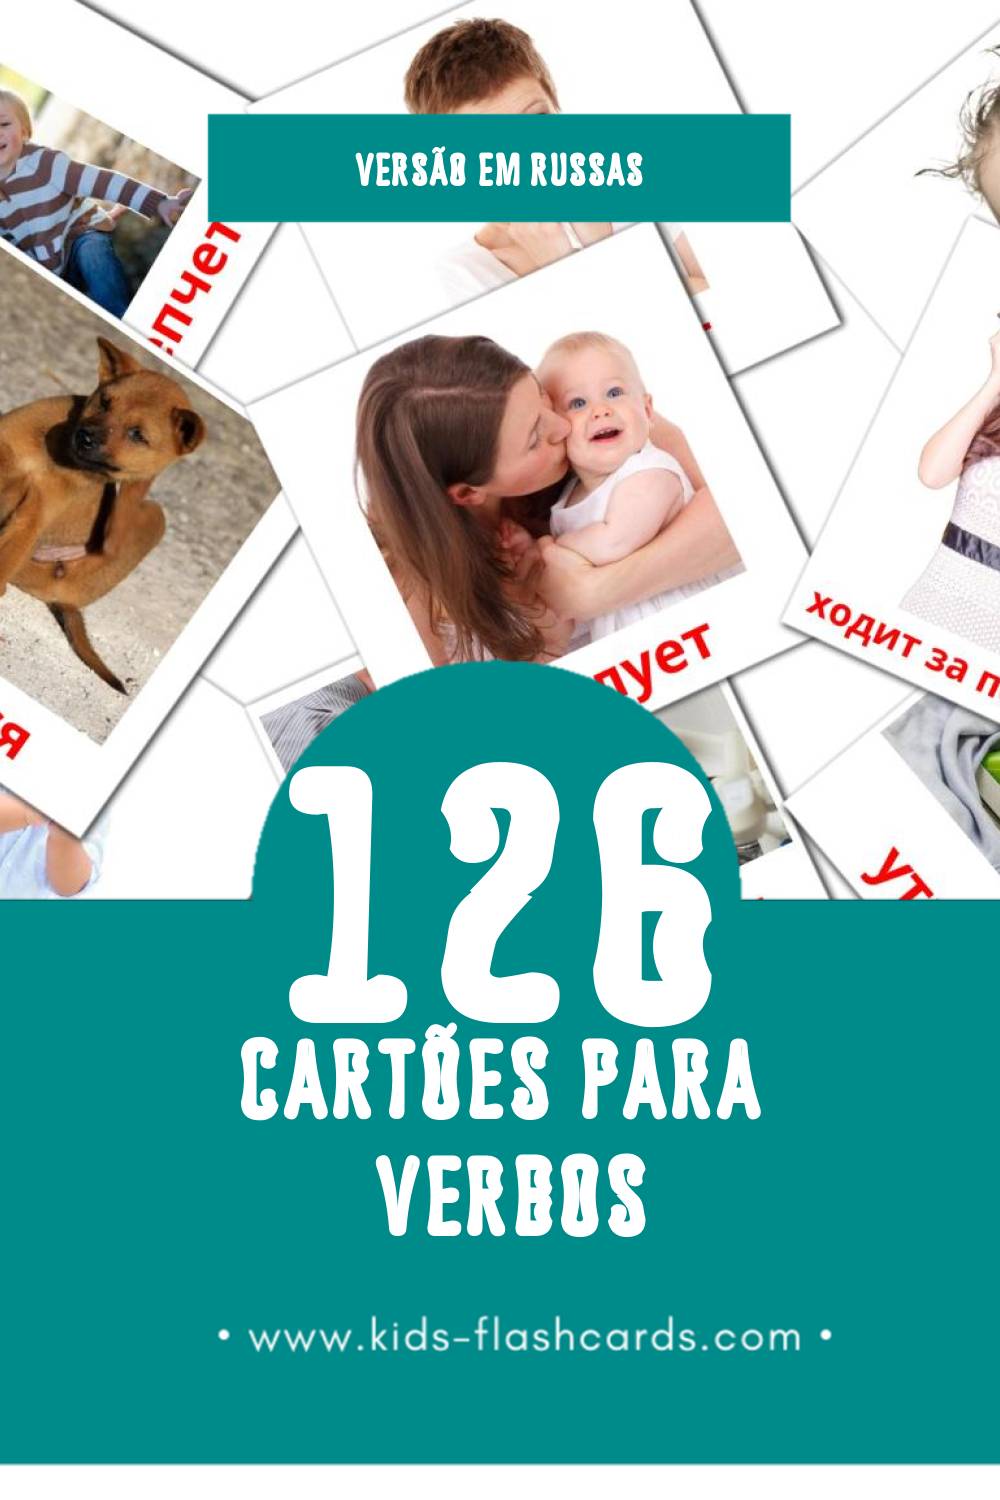 Flashcards de Глаголы Visuais para Toddlers (126 cartões em Russas)